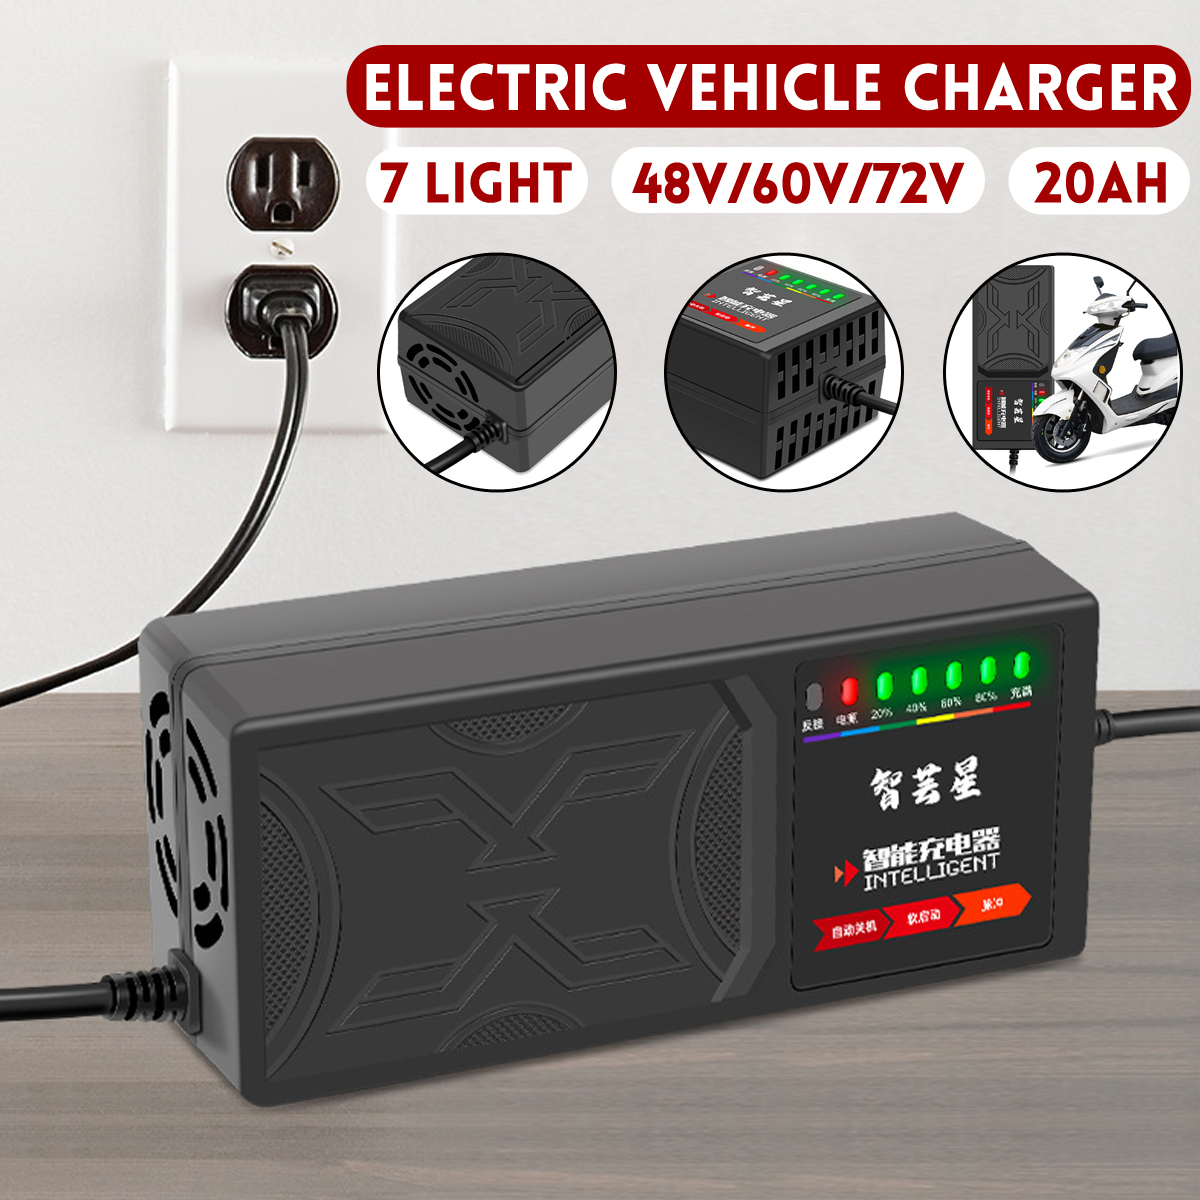 48V 20AH/60V 20AH/72V 20AH 7-Light Electric Vehicle Battery Charger Adapter